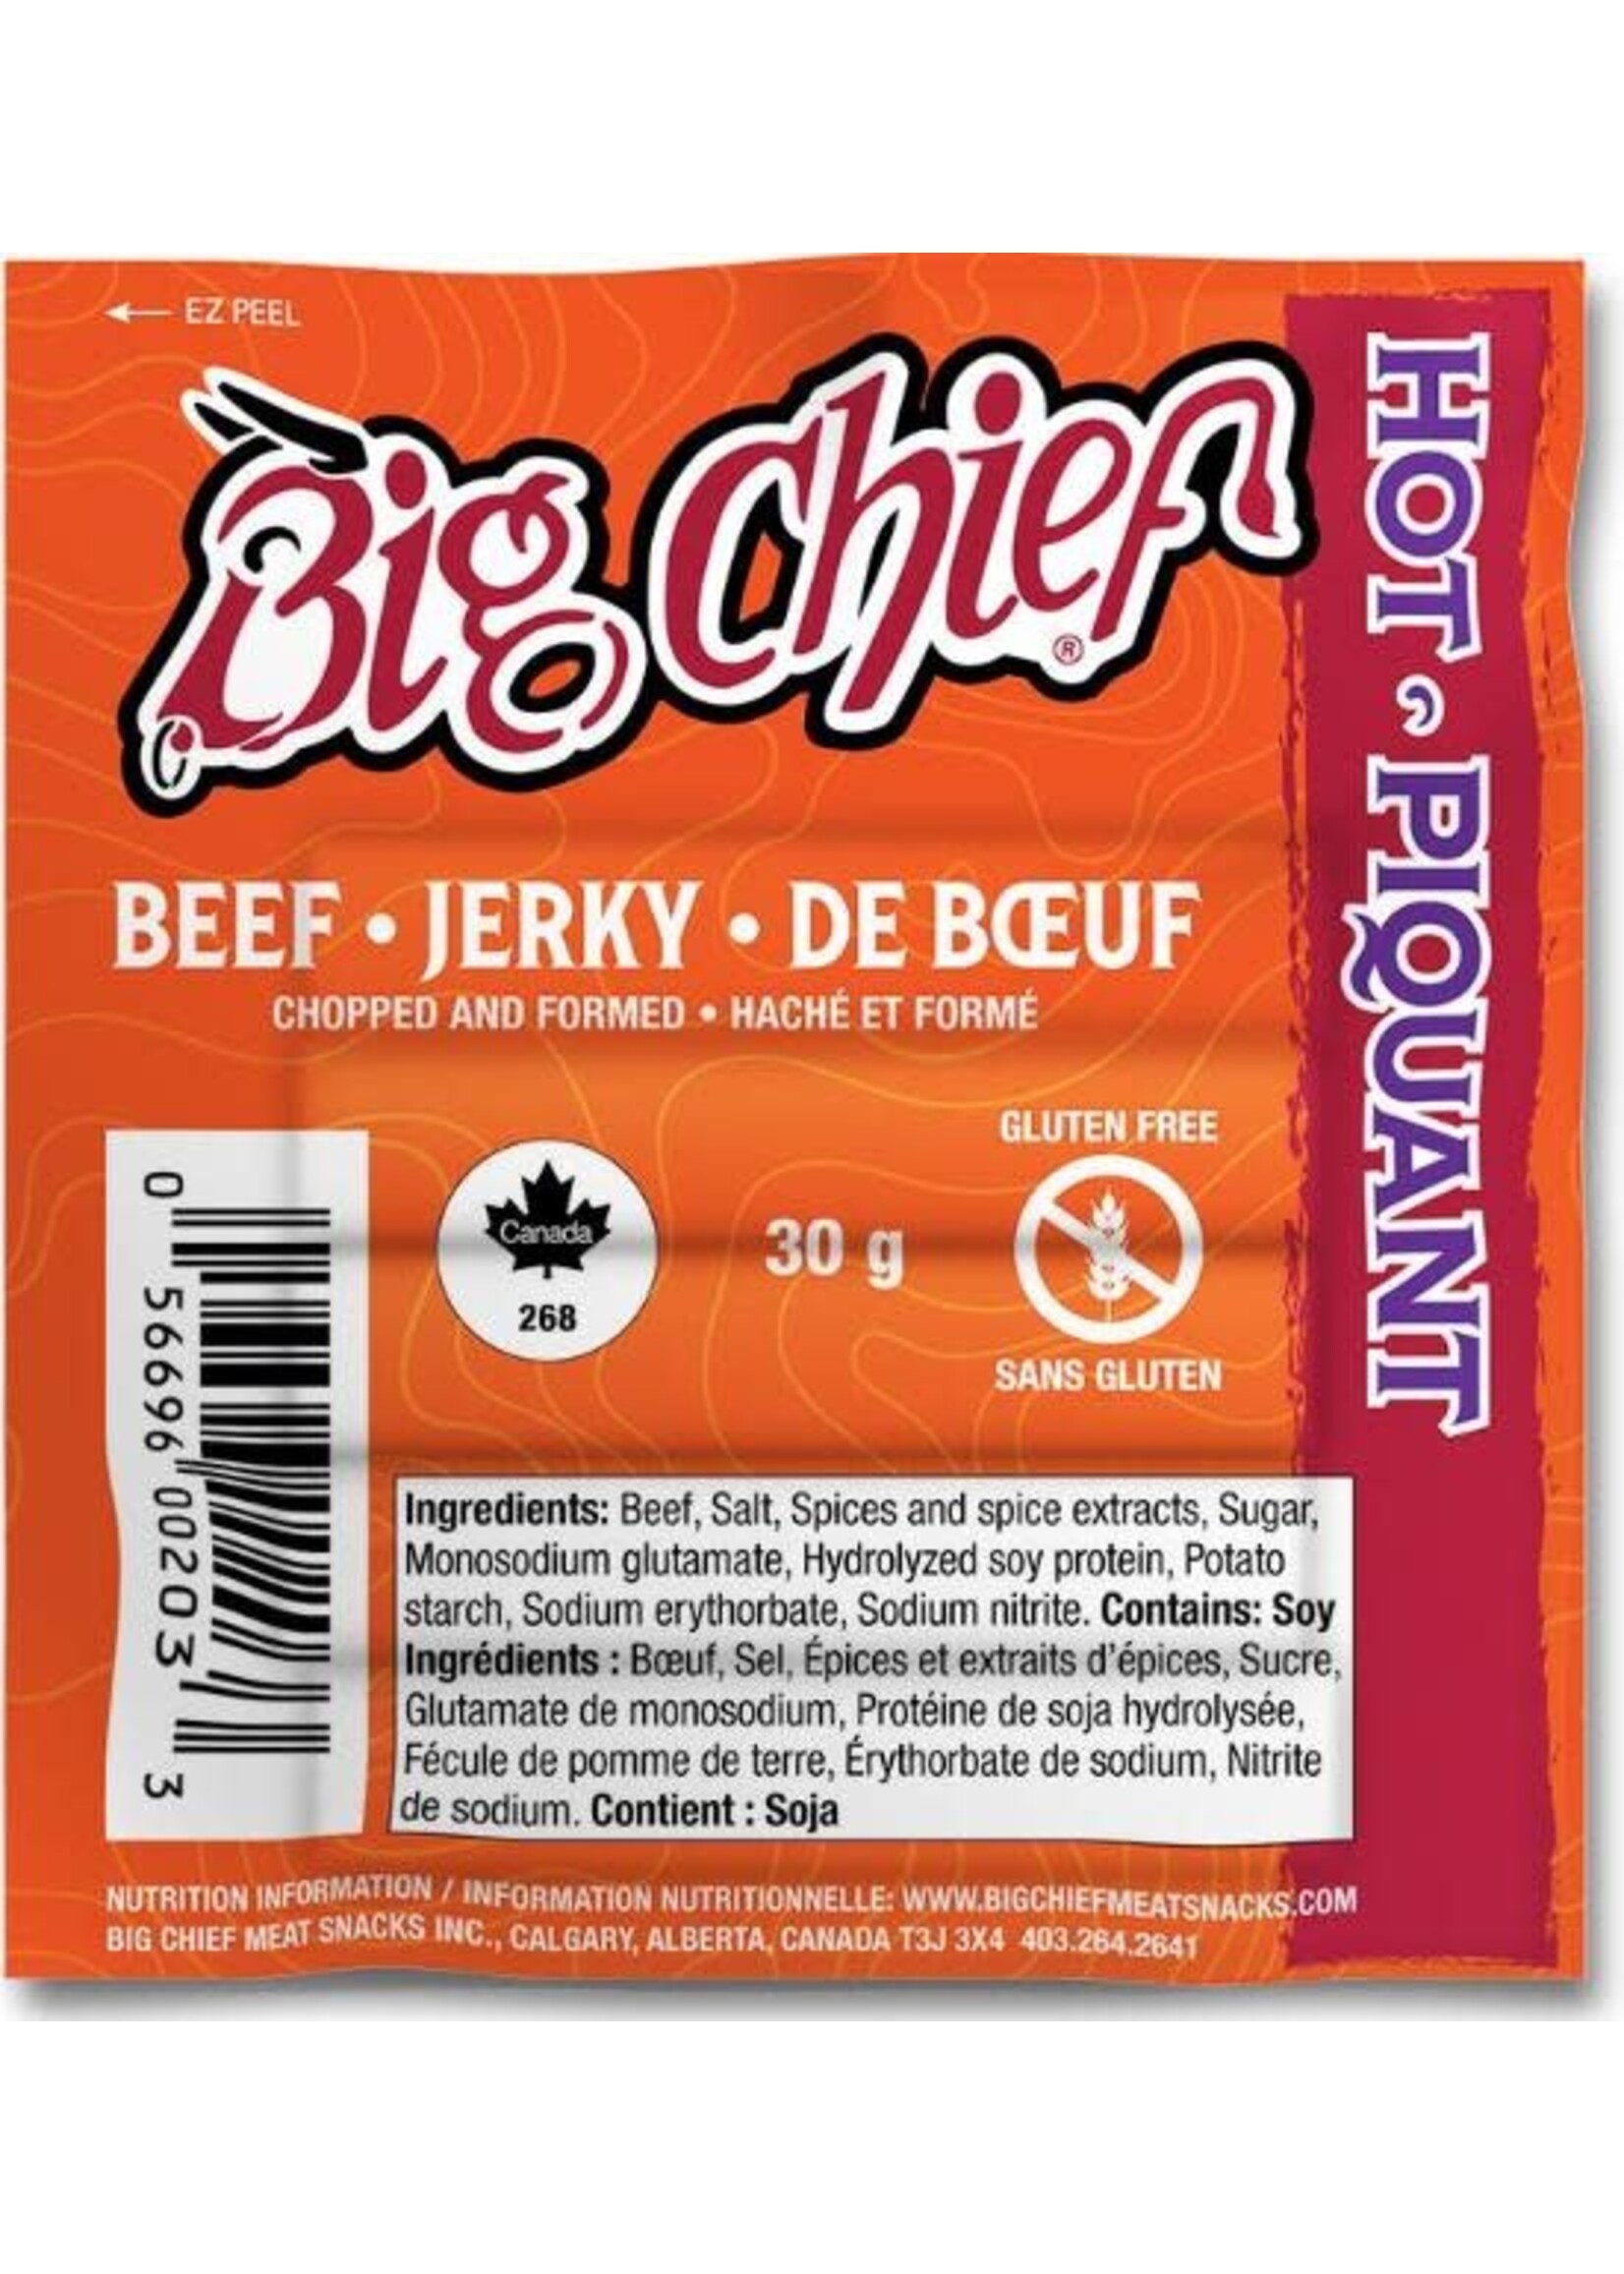 BIG CHIEF BEEF JERKY 30G HOT